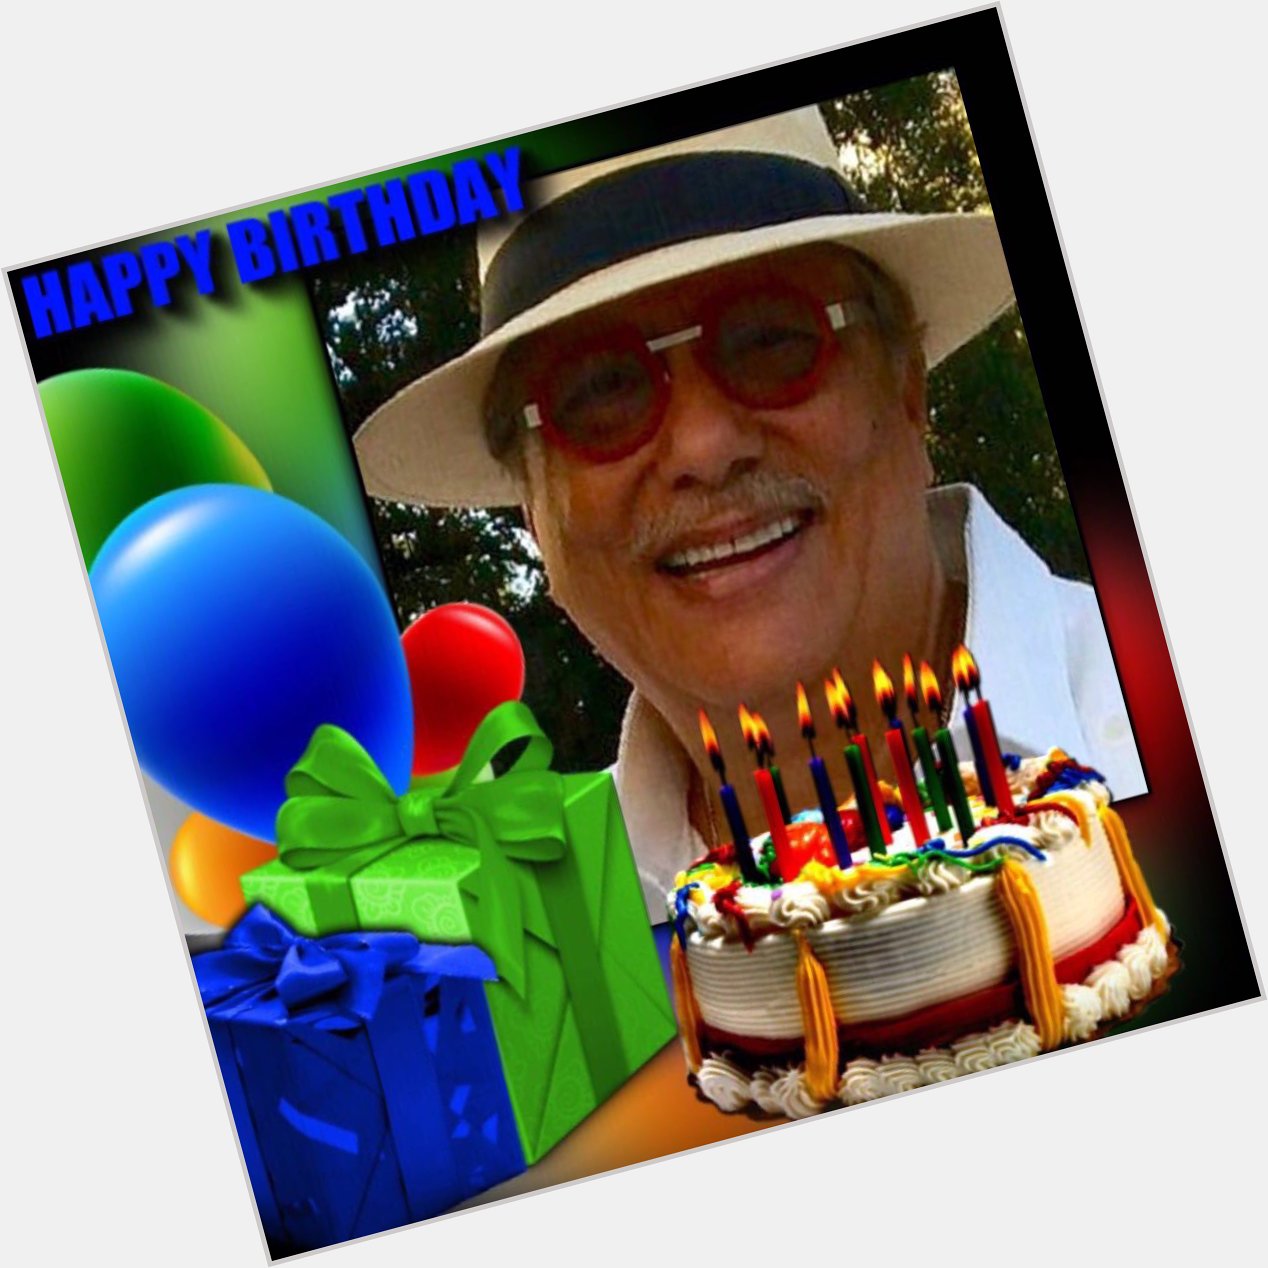    Happy Birthday dear Arturo Sandoval.
Many  Blessings, Brother! 